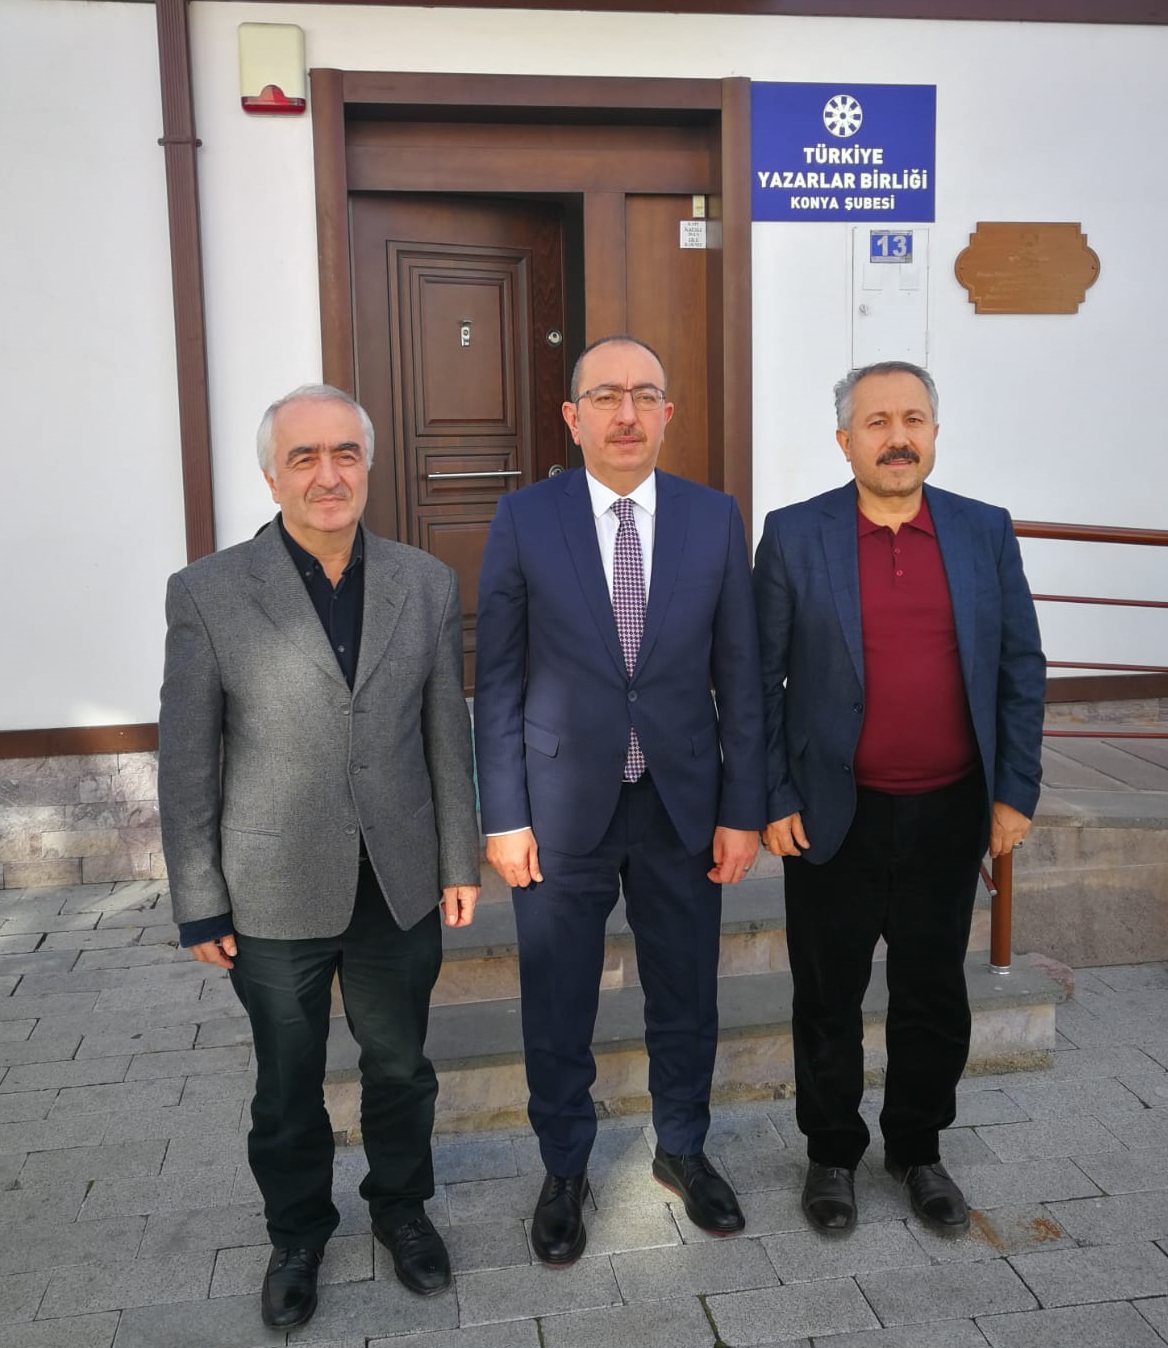 Meram Belediye Başkanı Mustafa Kavuş'tan Türkiye Yazarlar Birliği Konya Şubesi'ne Tebrik Ziyareti